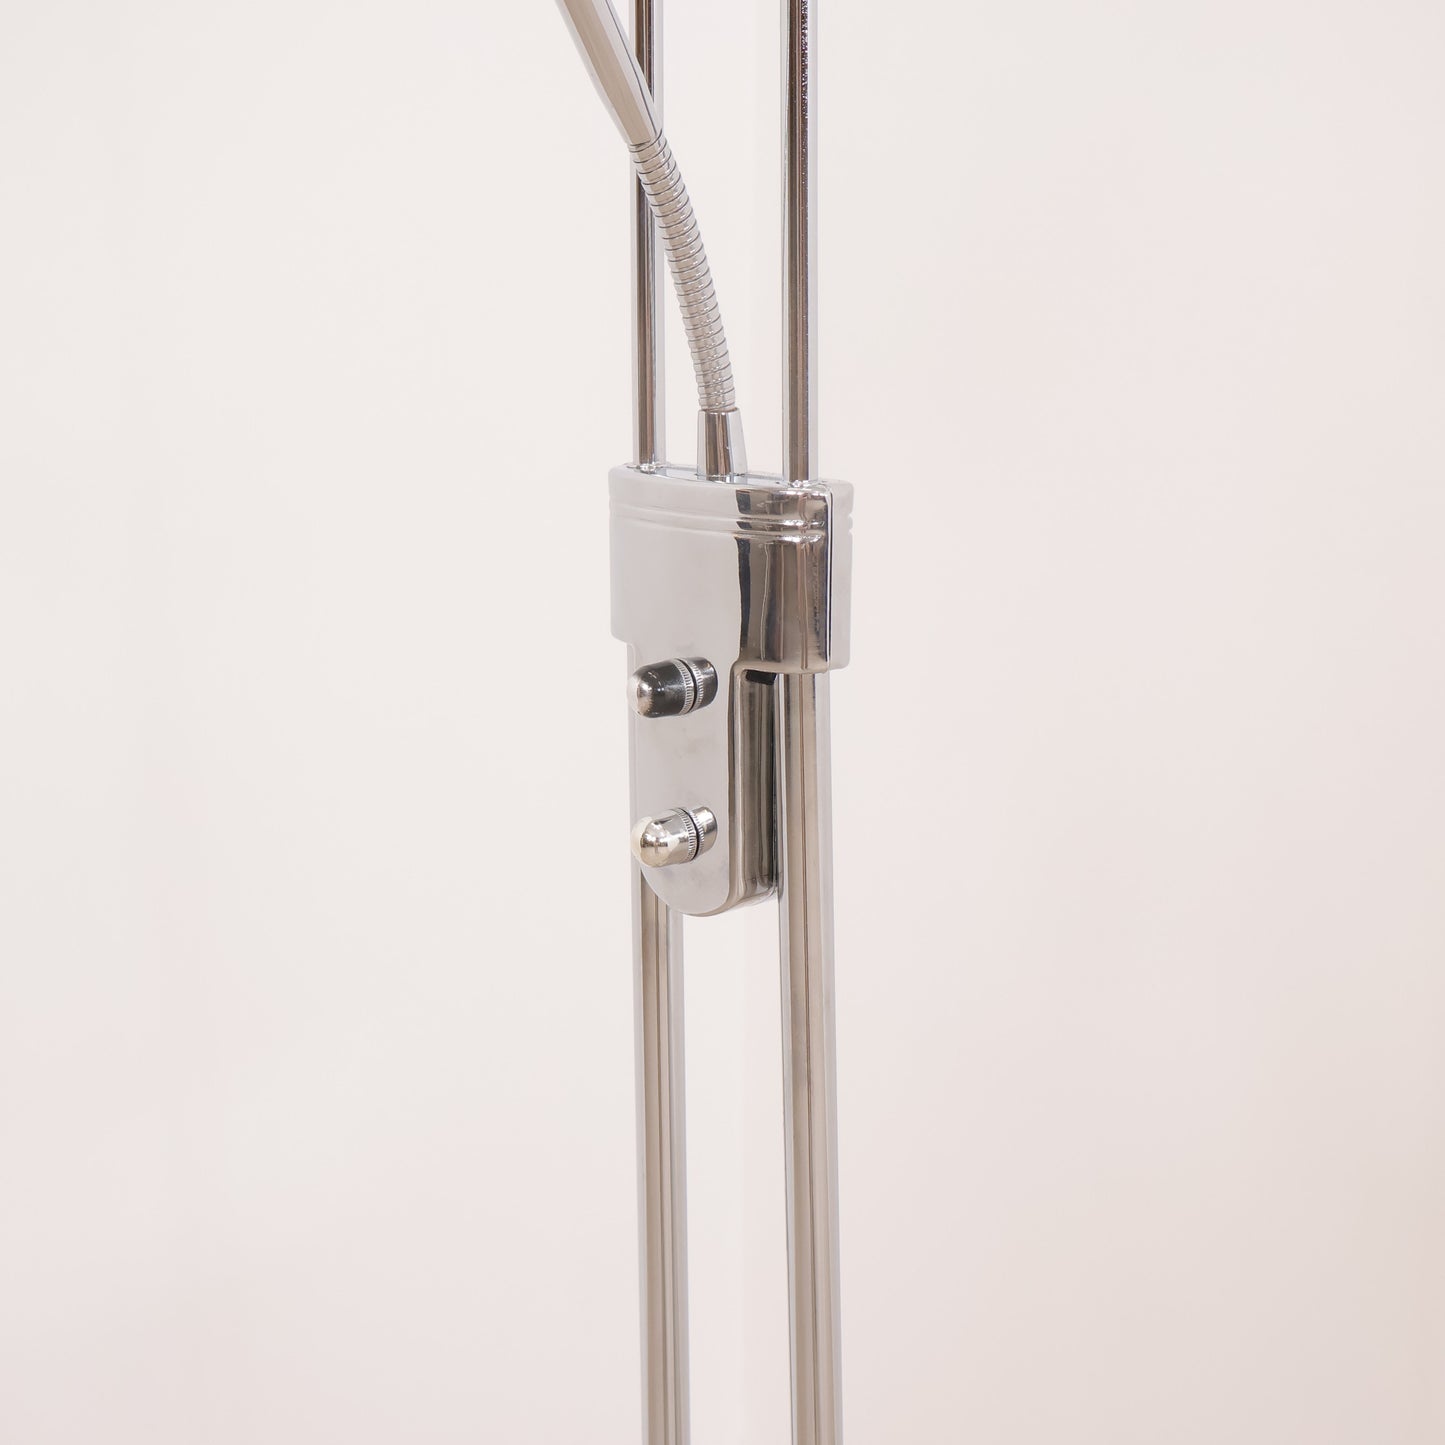 Scan Light AS stålampe i moderne design med krom ramme og to lampehoder